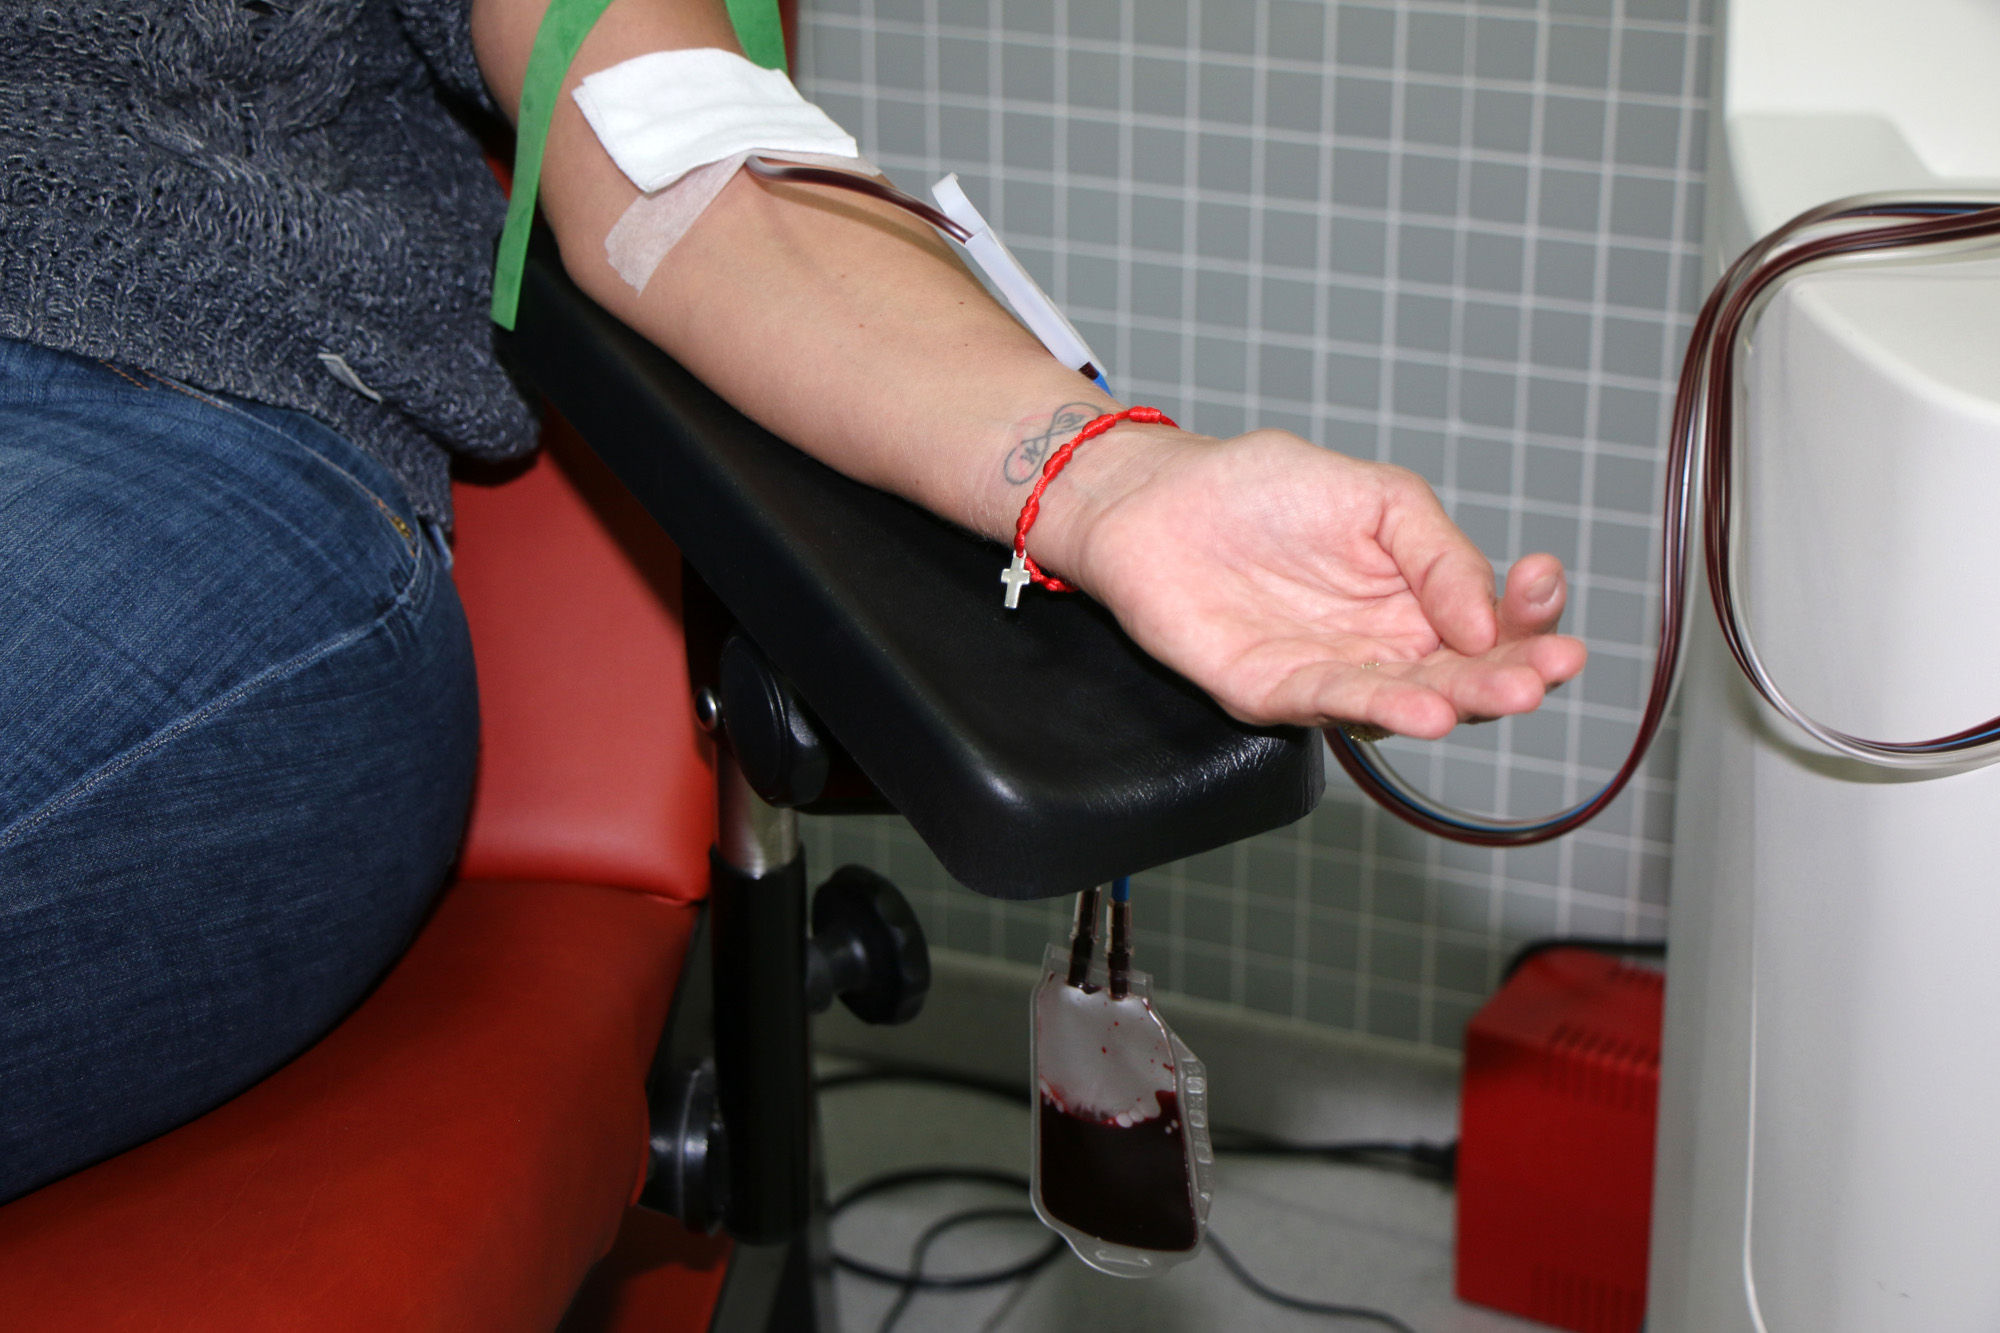 Donante de sangre del ICHH / CanariasNoticias.es